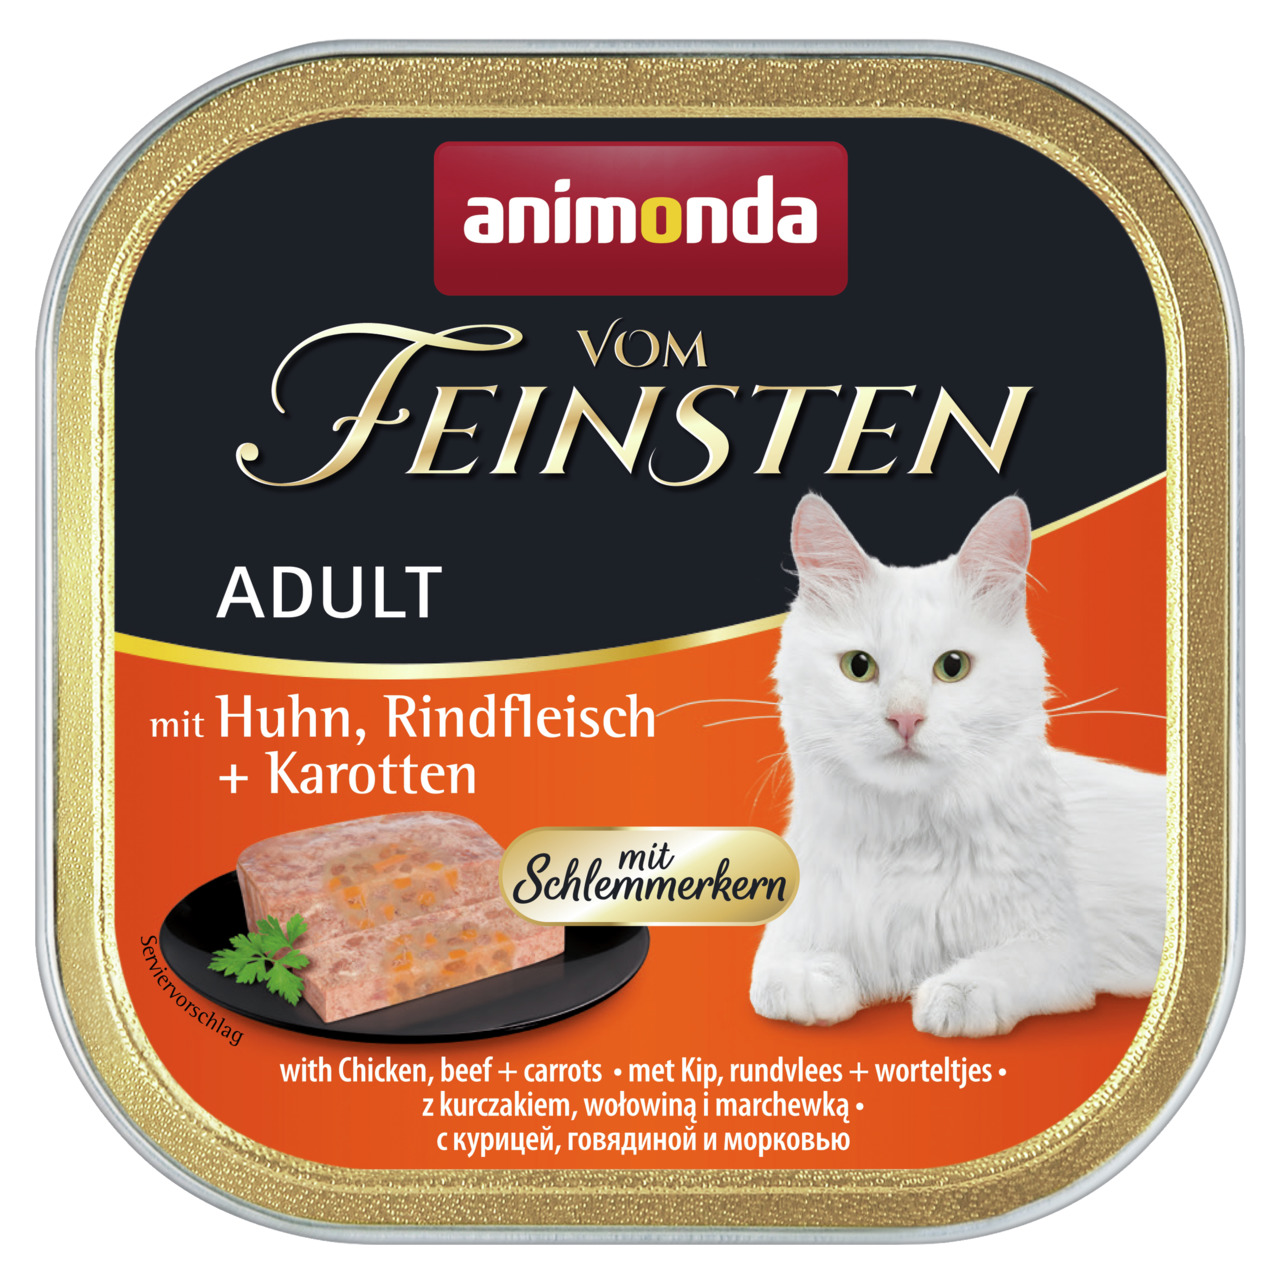 Animonda vom Feinsten Adult mit Huhn, Rindfleisch + Karotten mit Schlemmerkern Katzen Nassfutter 100 g